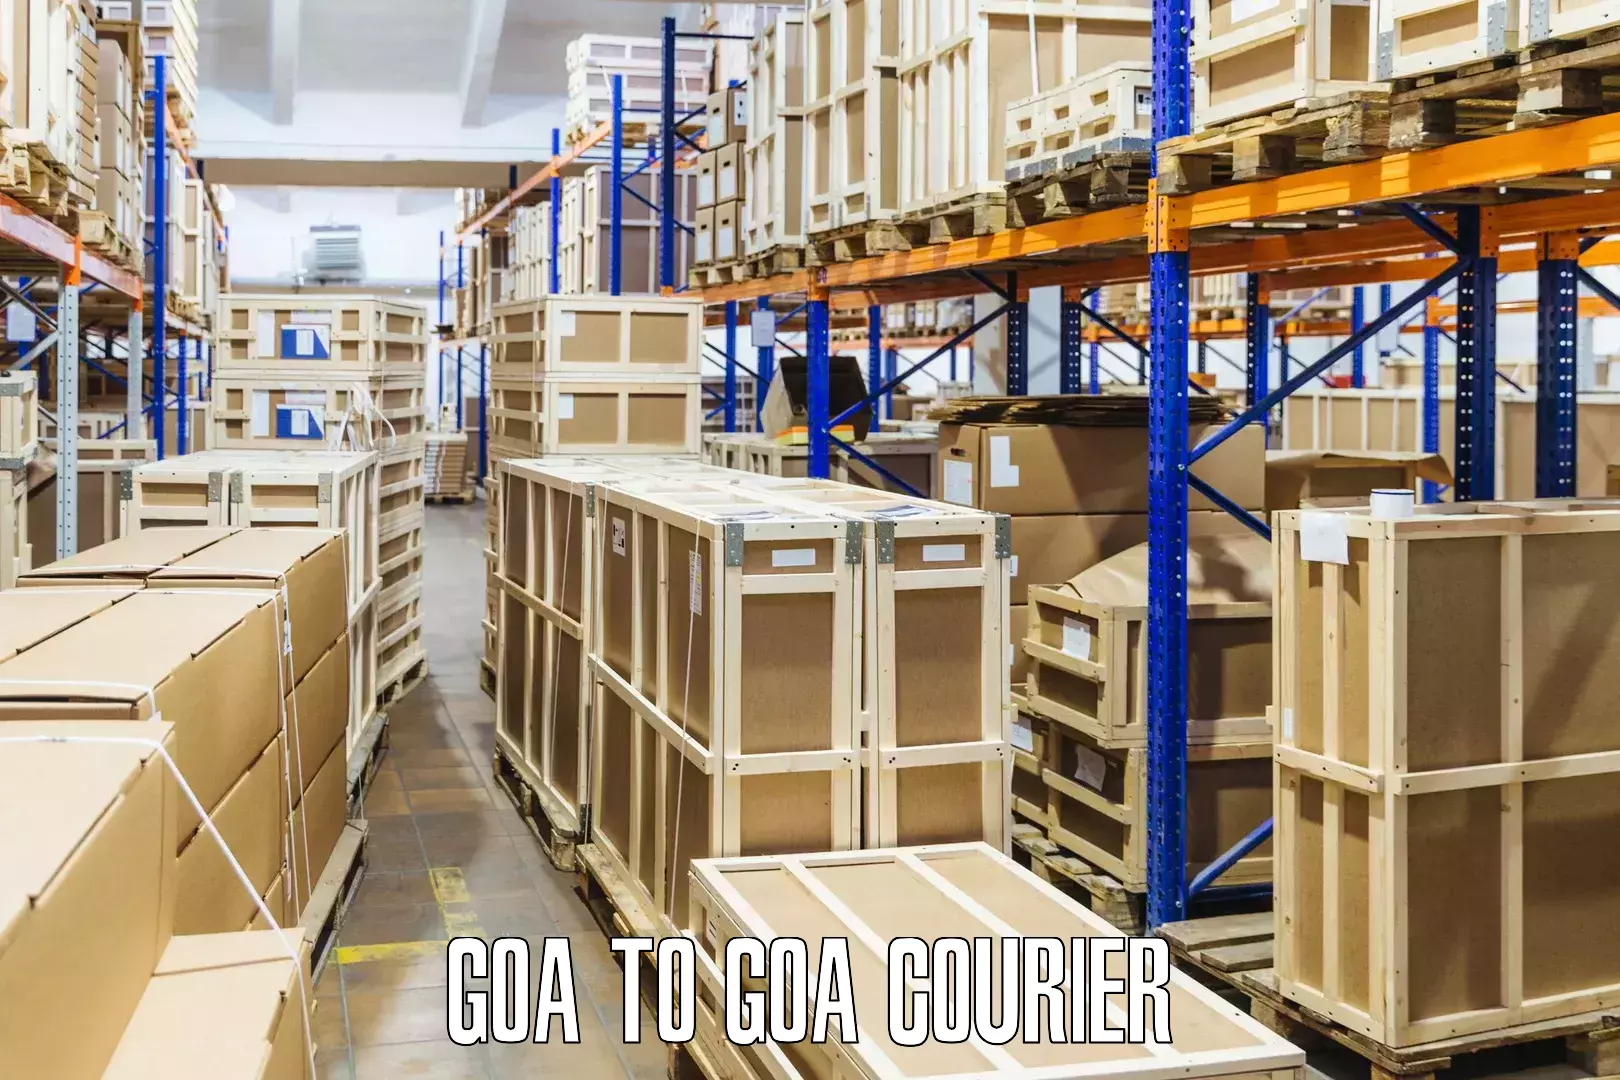 Dynamic parcel delivery Goa to Vasco da Gama